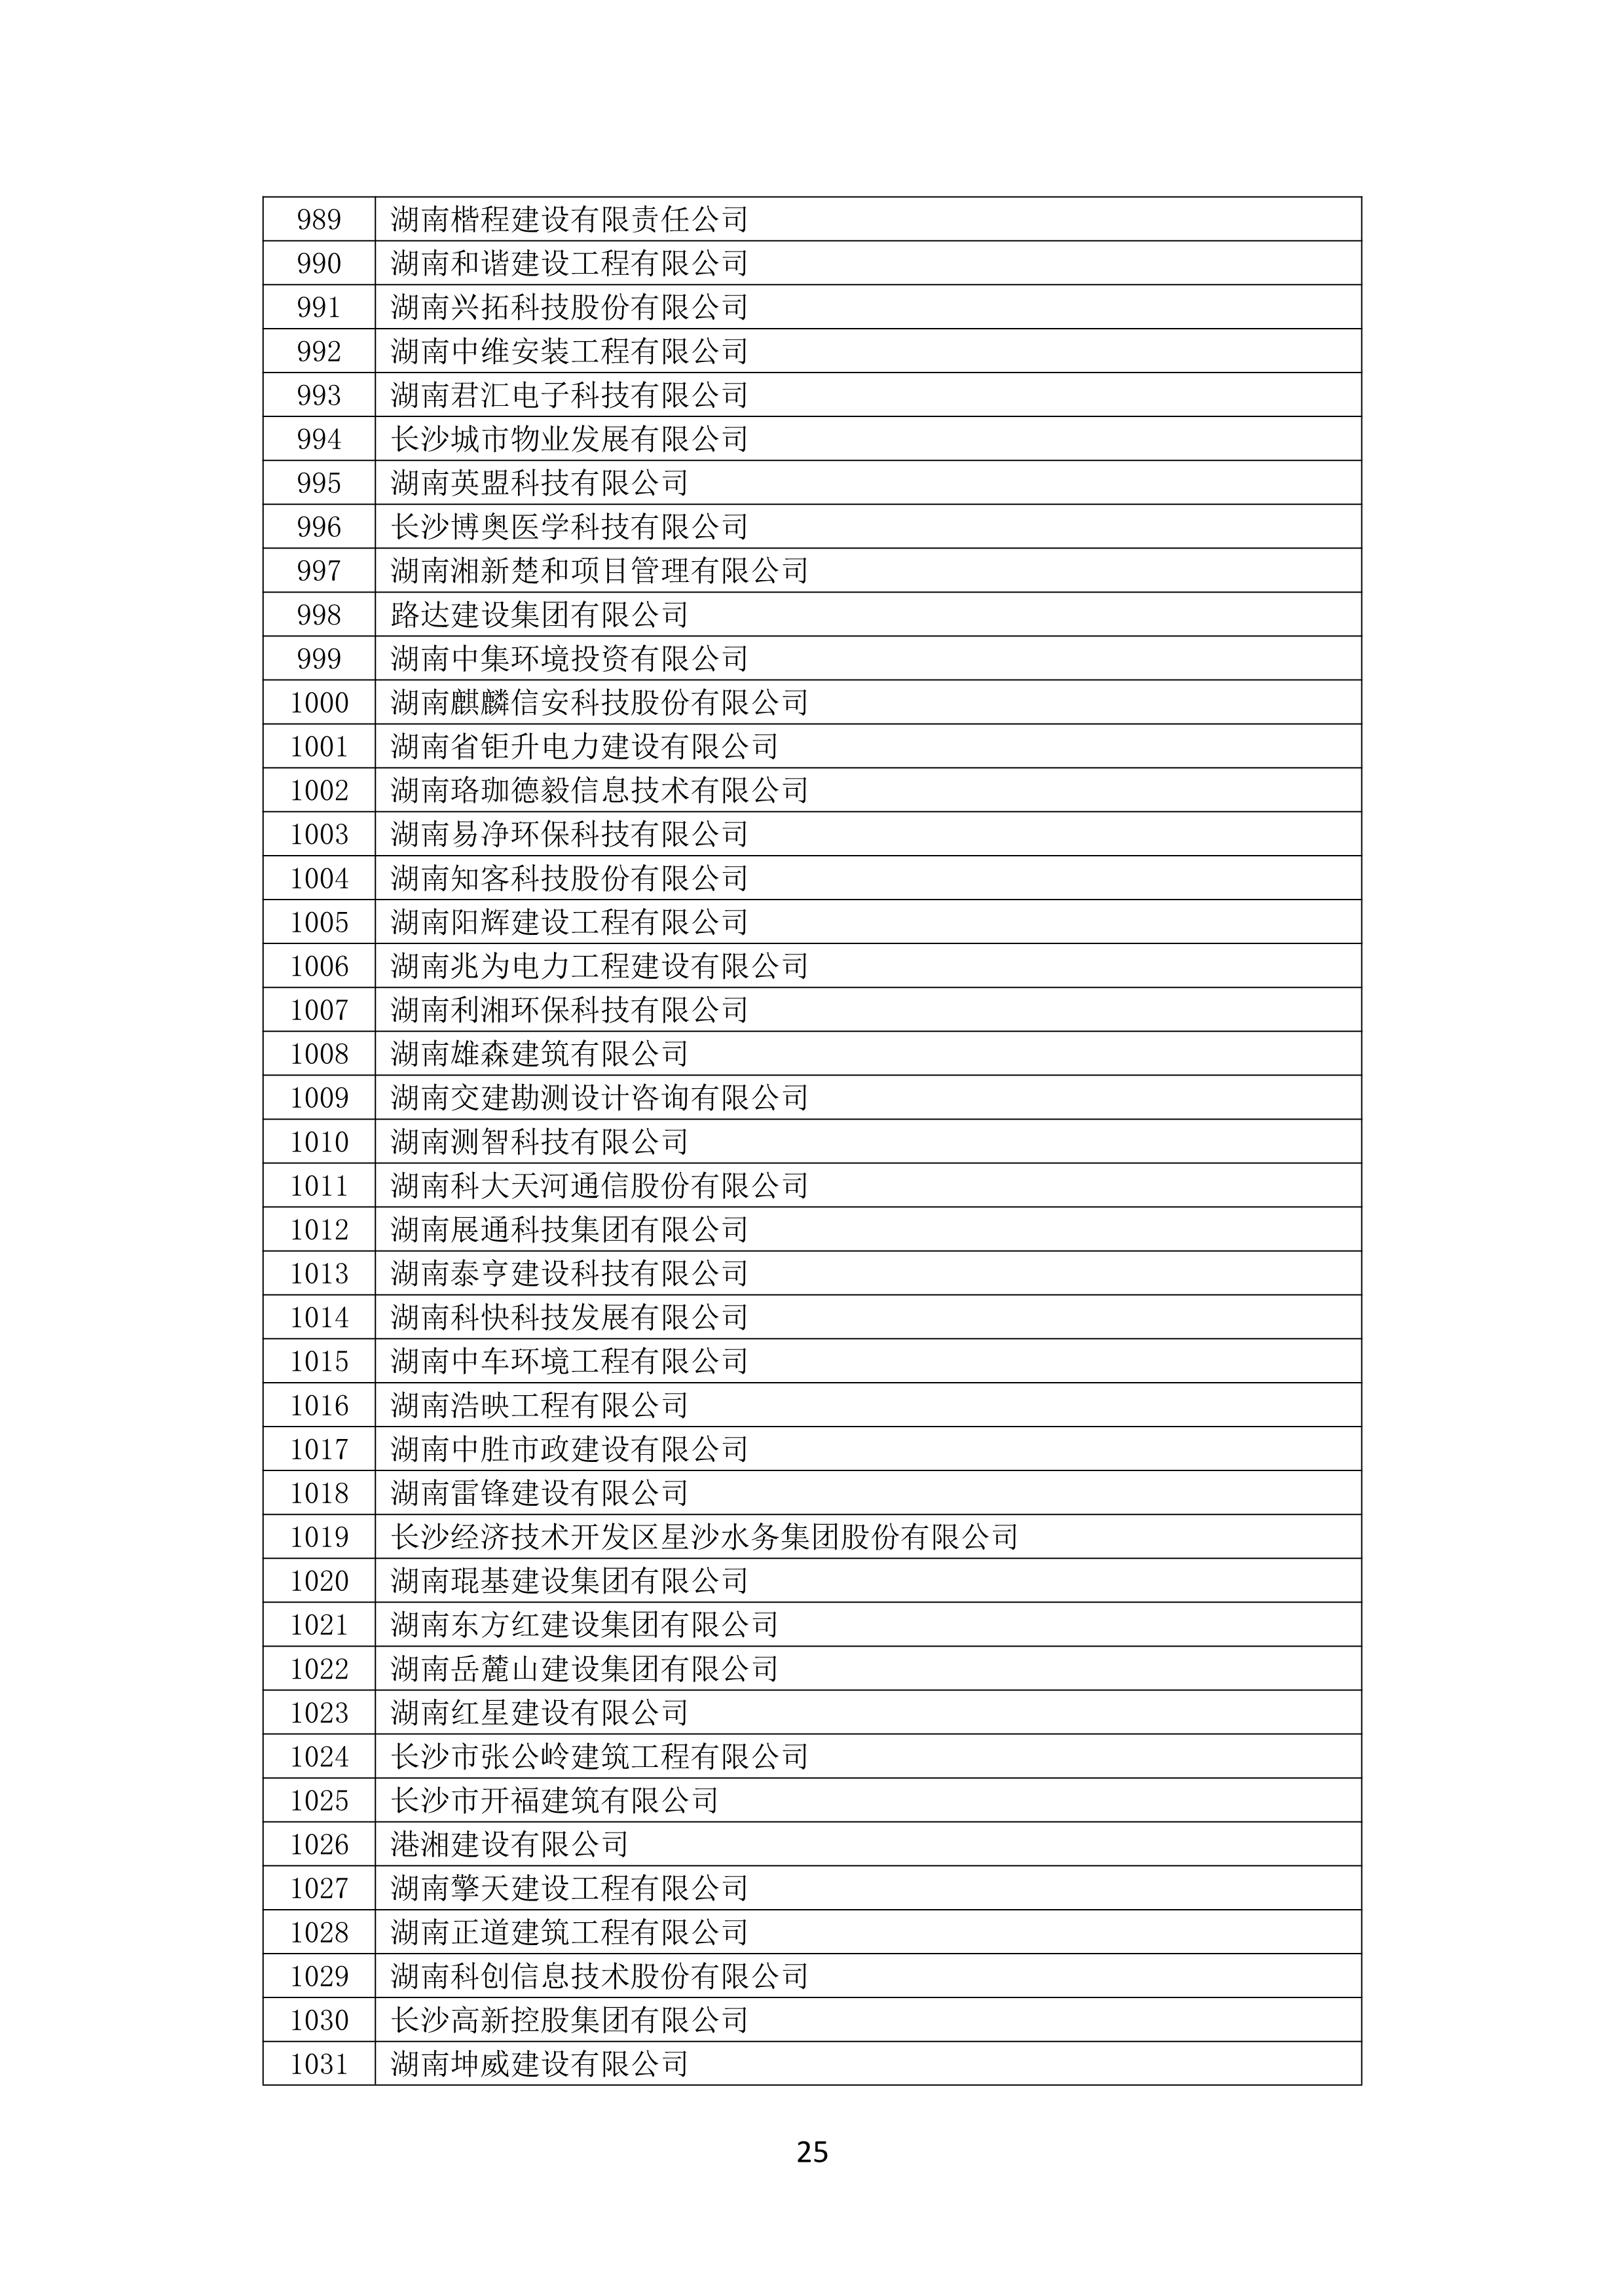 2021 年(nián)度湖南省守合同重信用企業名單_26.png